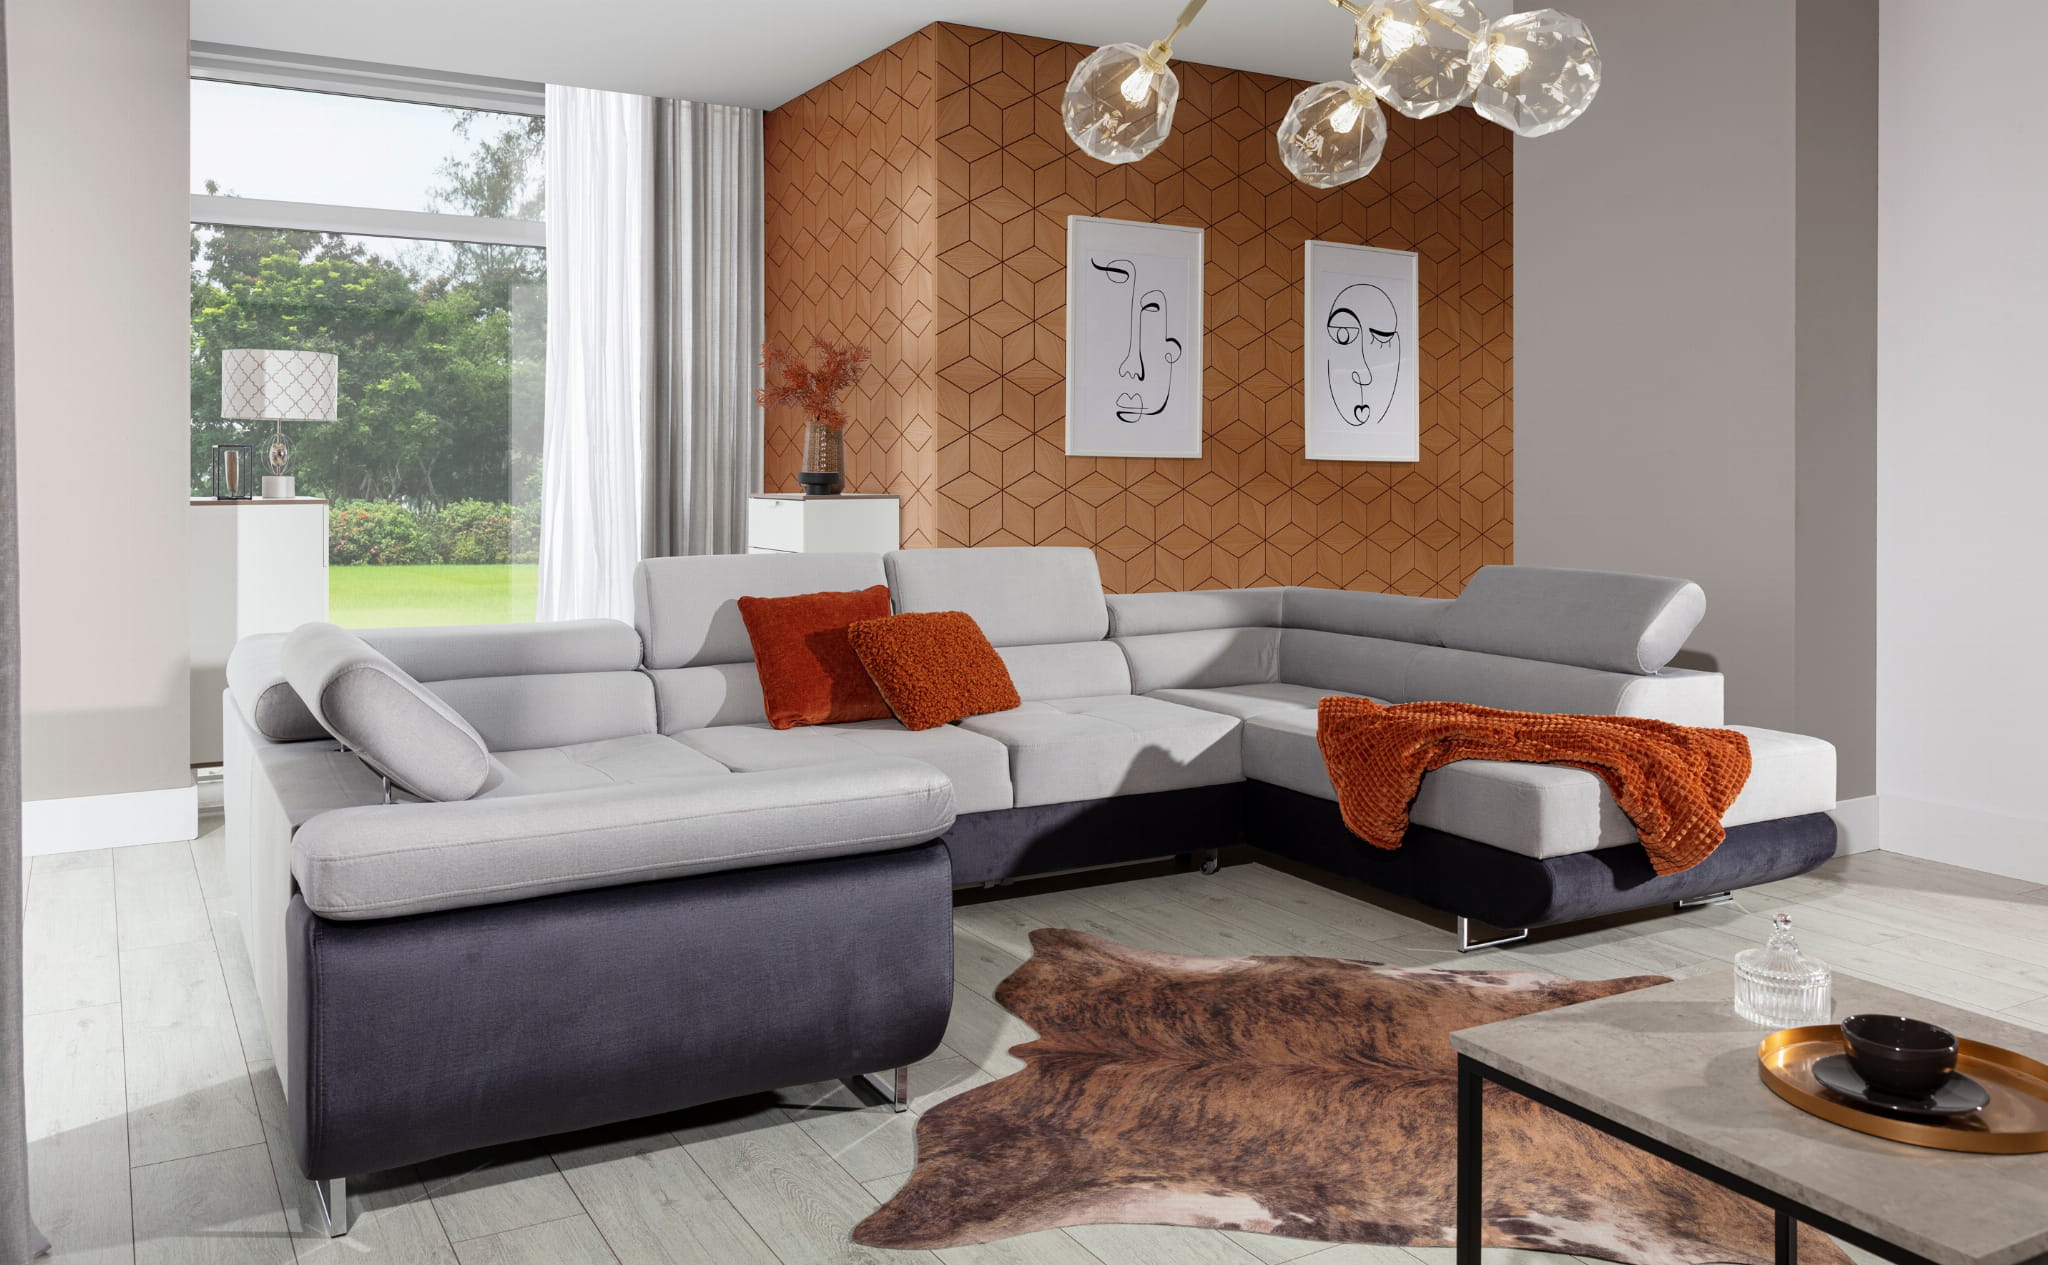 Sala de TV -Home- BaratonExpress: sofás, colchões e loja de móveis